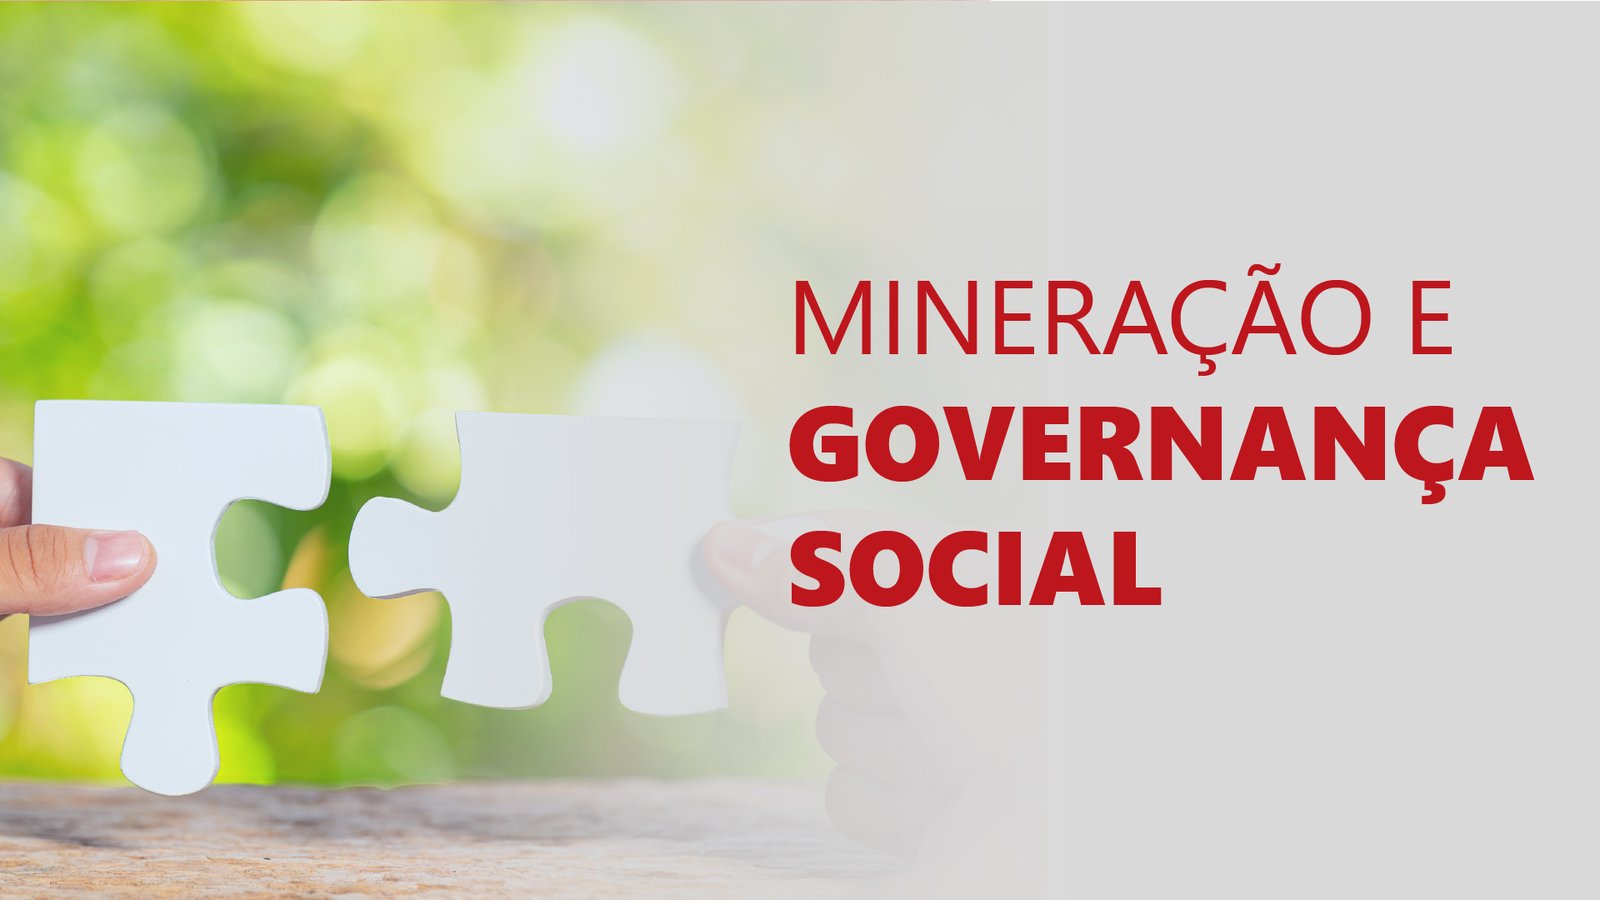 Novos vídeos sobre mineração, Governança Social e ESG